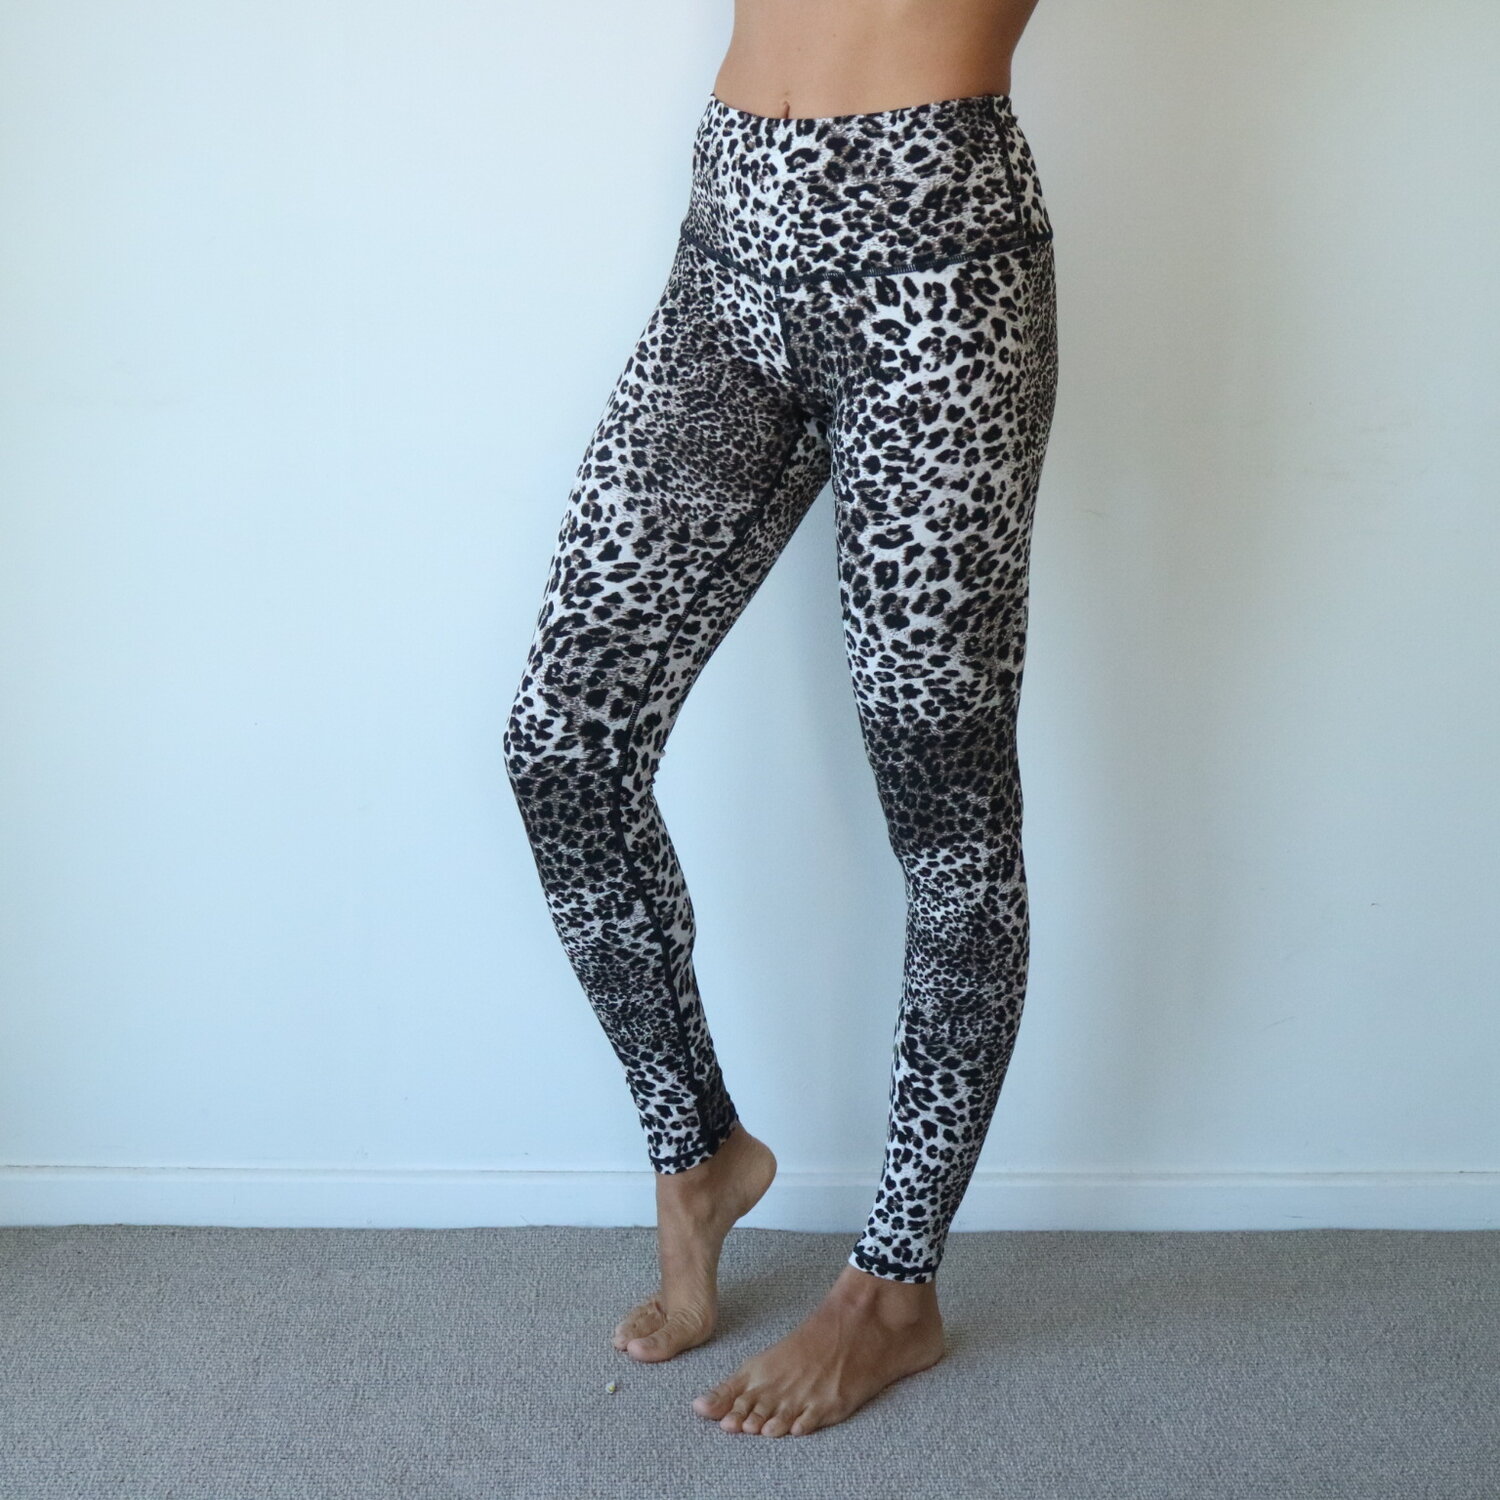 Printed leggings - leopard print — Nulu